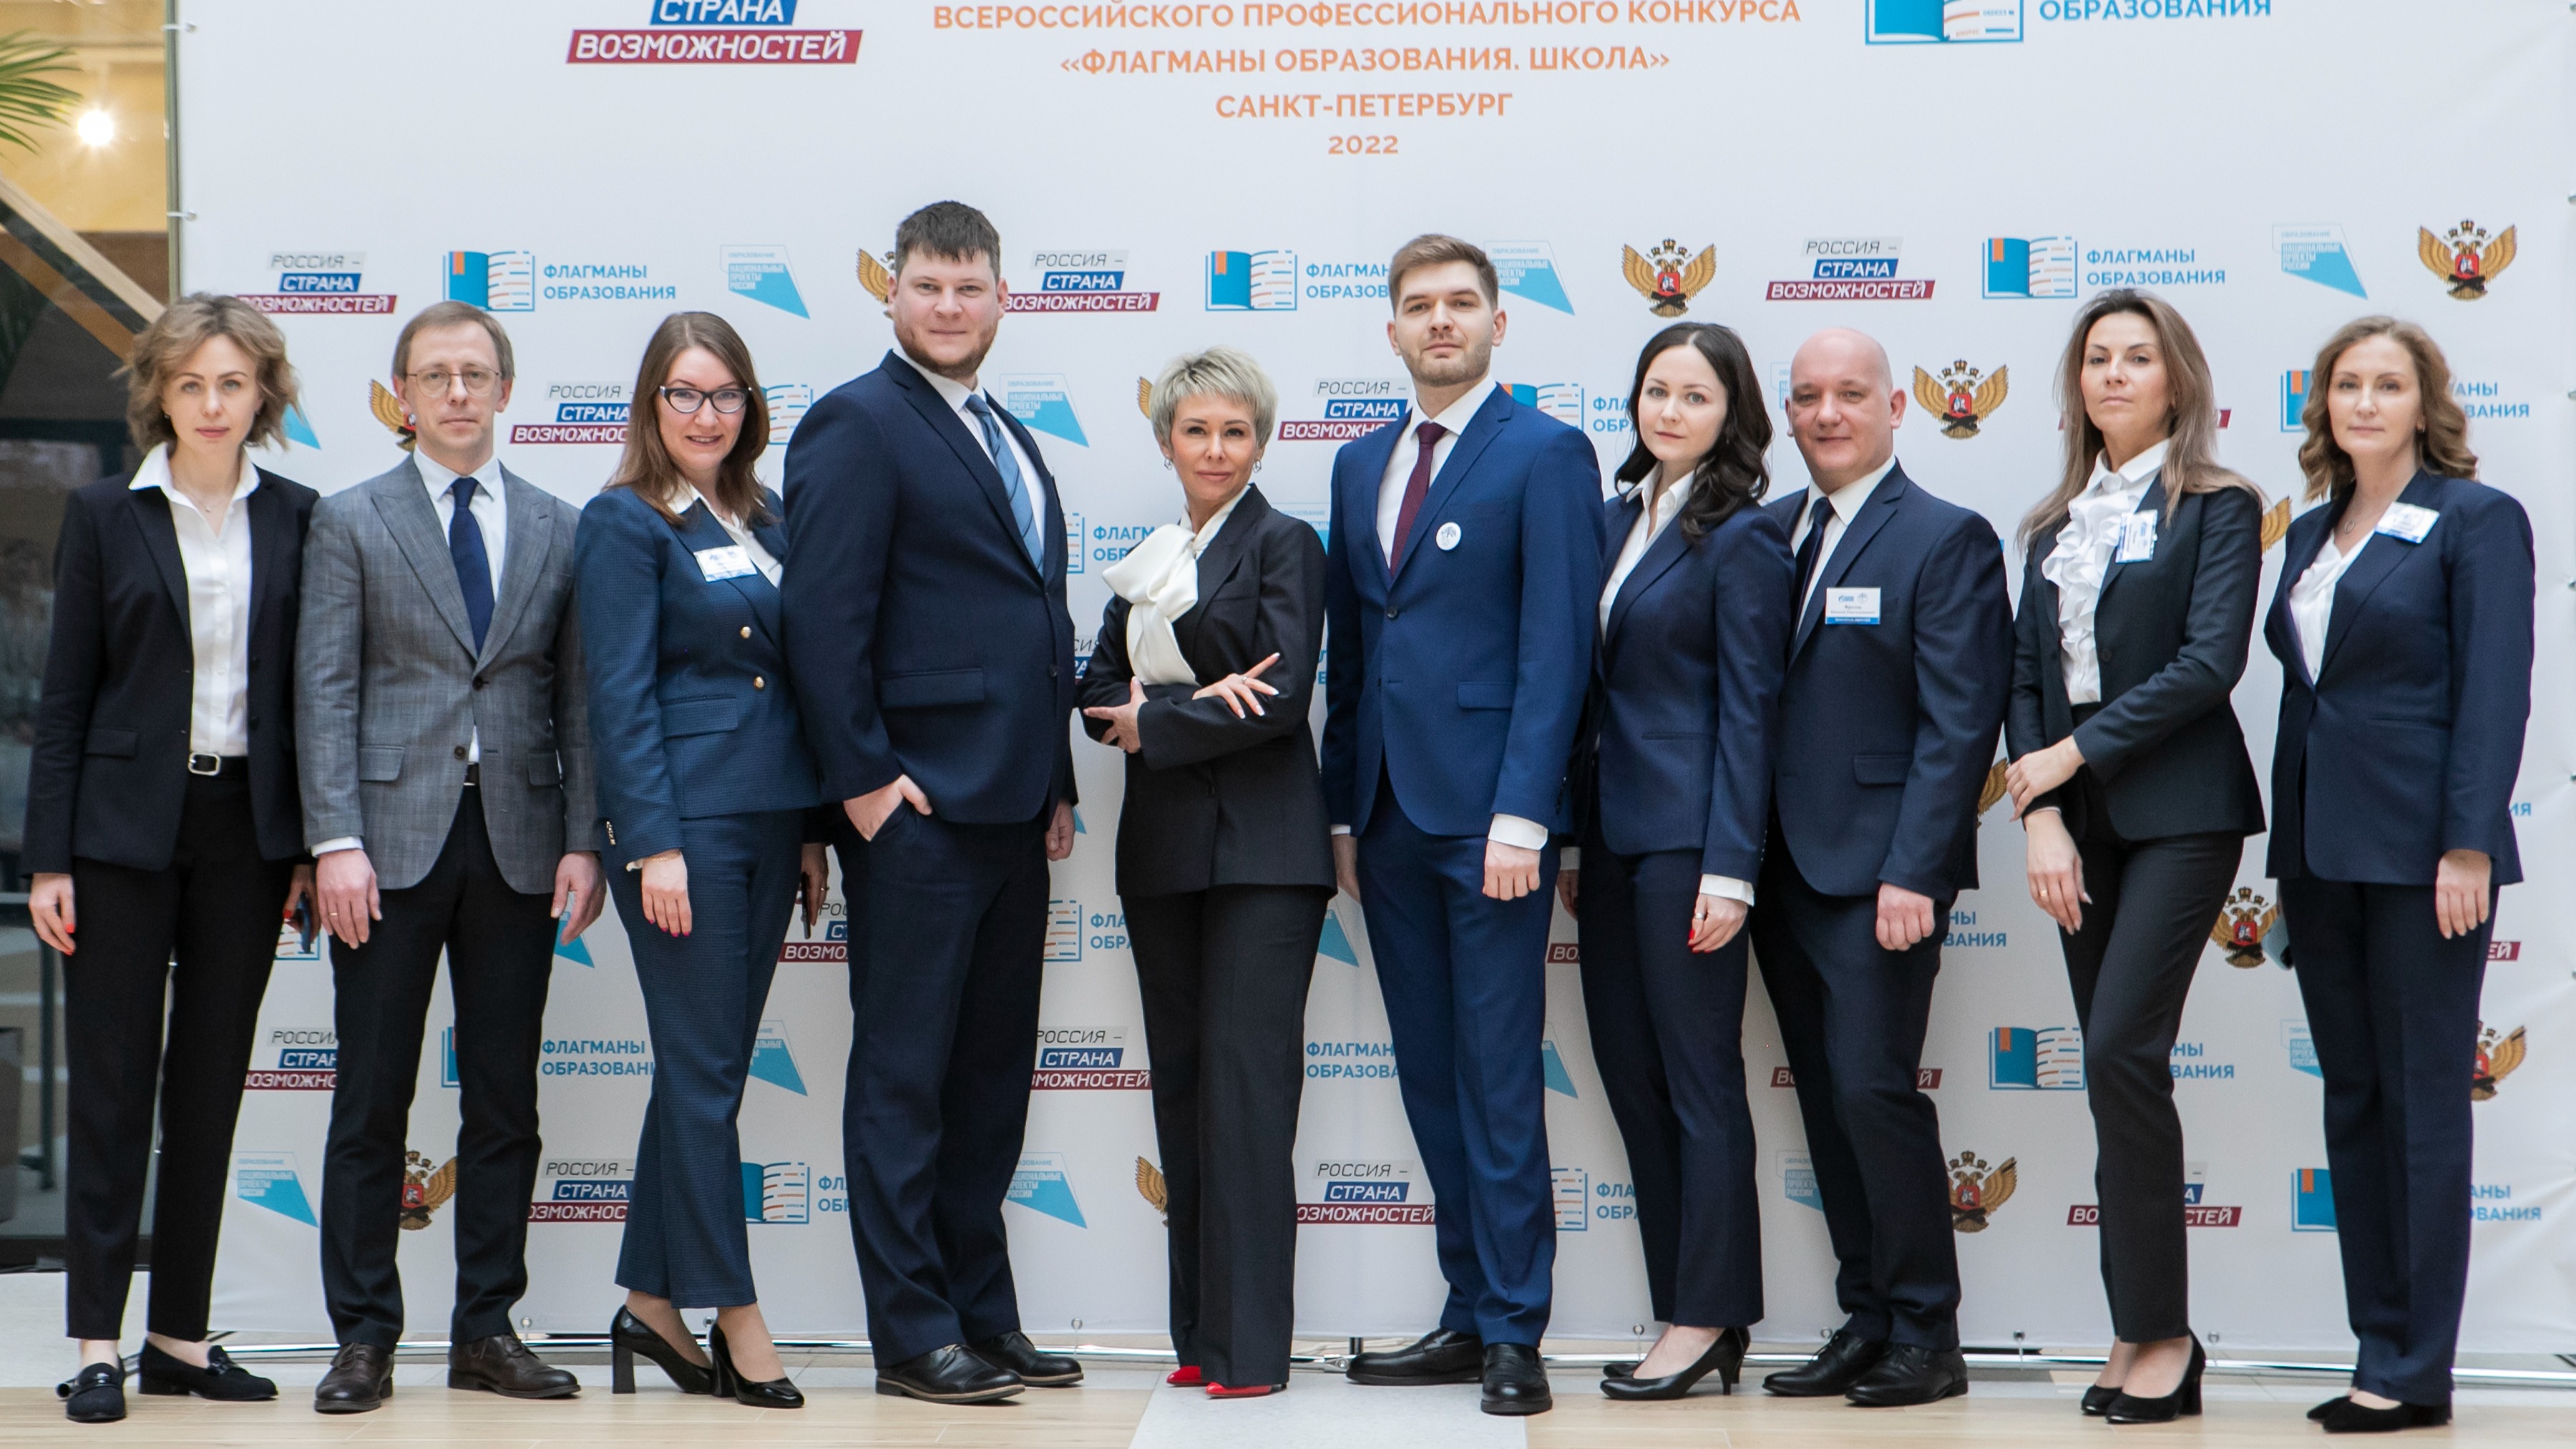 В Санкт-Петербурге стартовал очный полуфинал конкурса  «Флагманы образования. Школа» для команд Северо-Запада